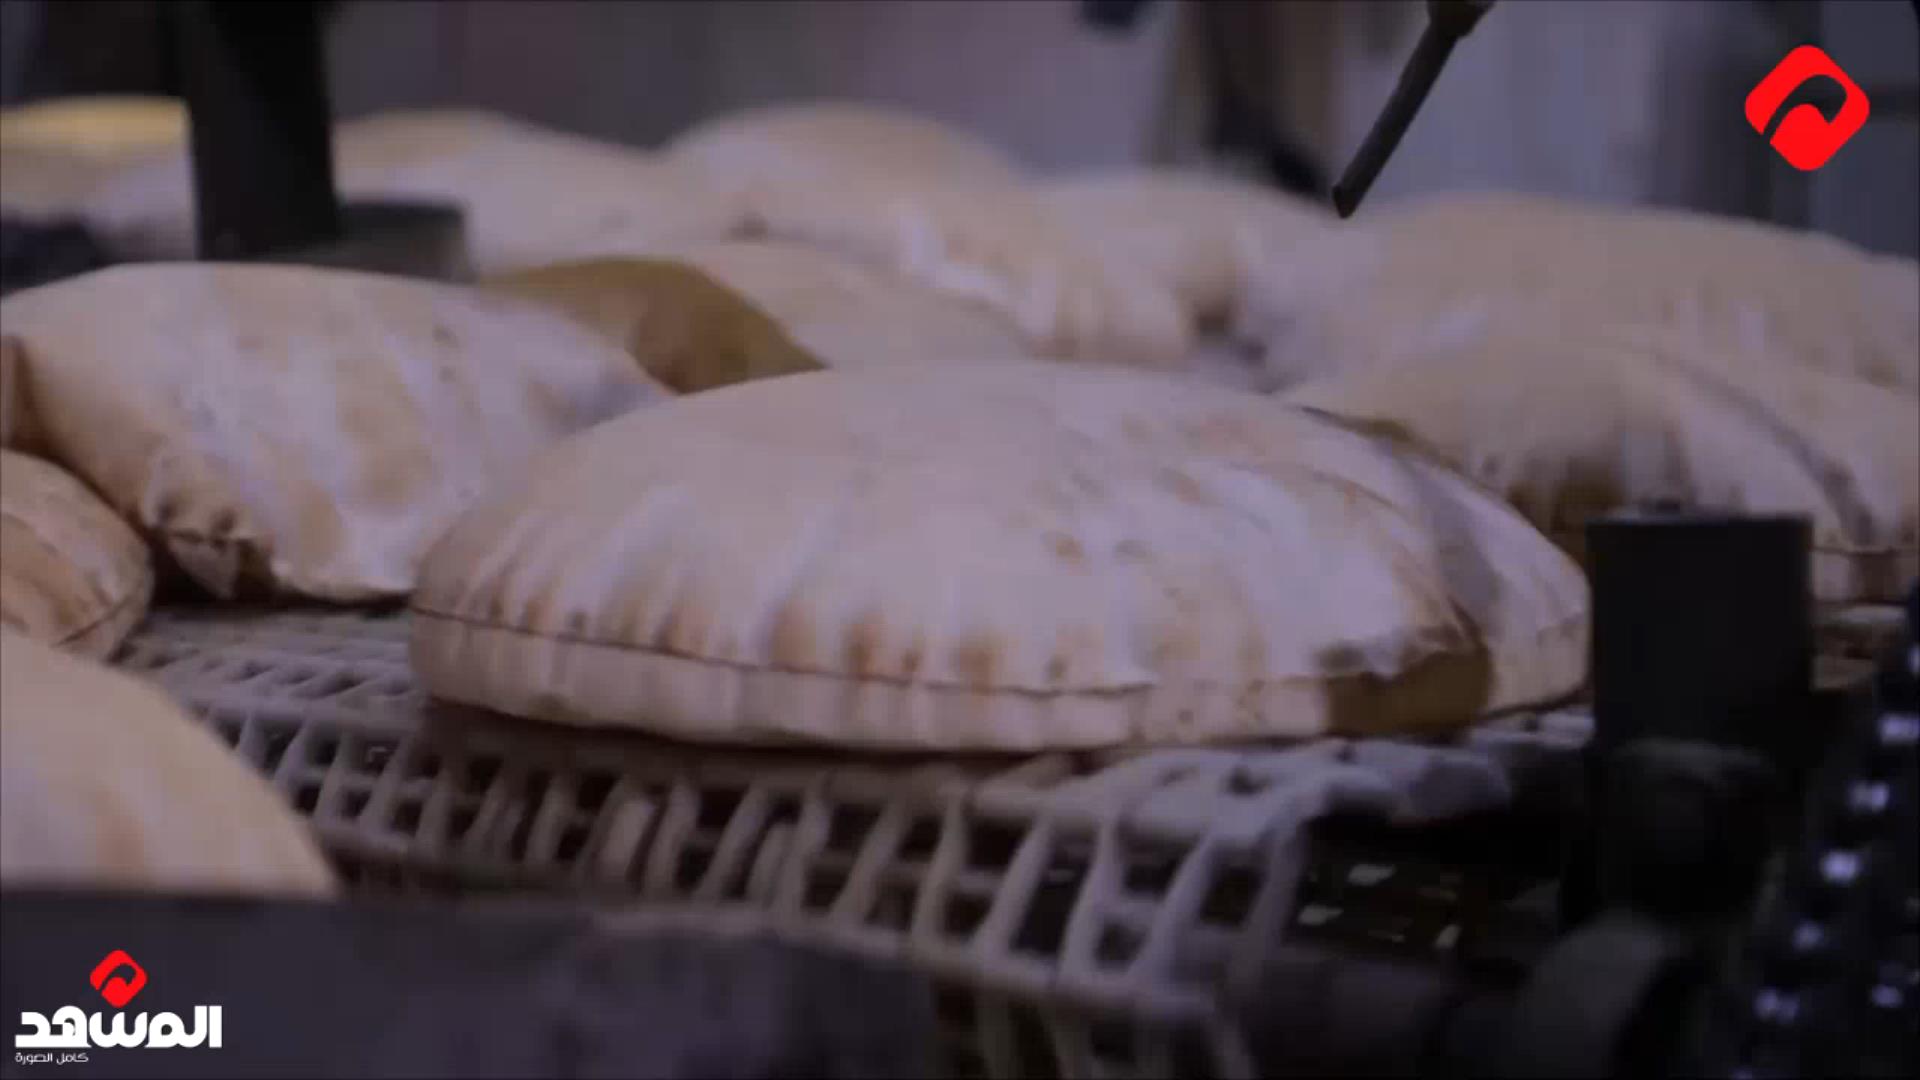 البرازي في طرطوس تحضيراً لتوطين الخبز اعتباراً من يوم الأحد القادم